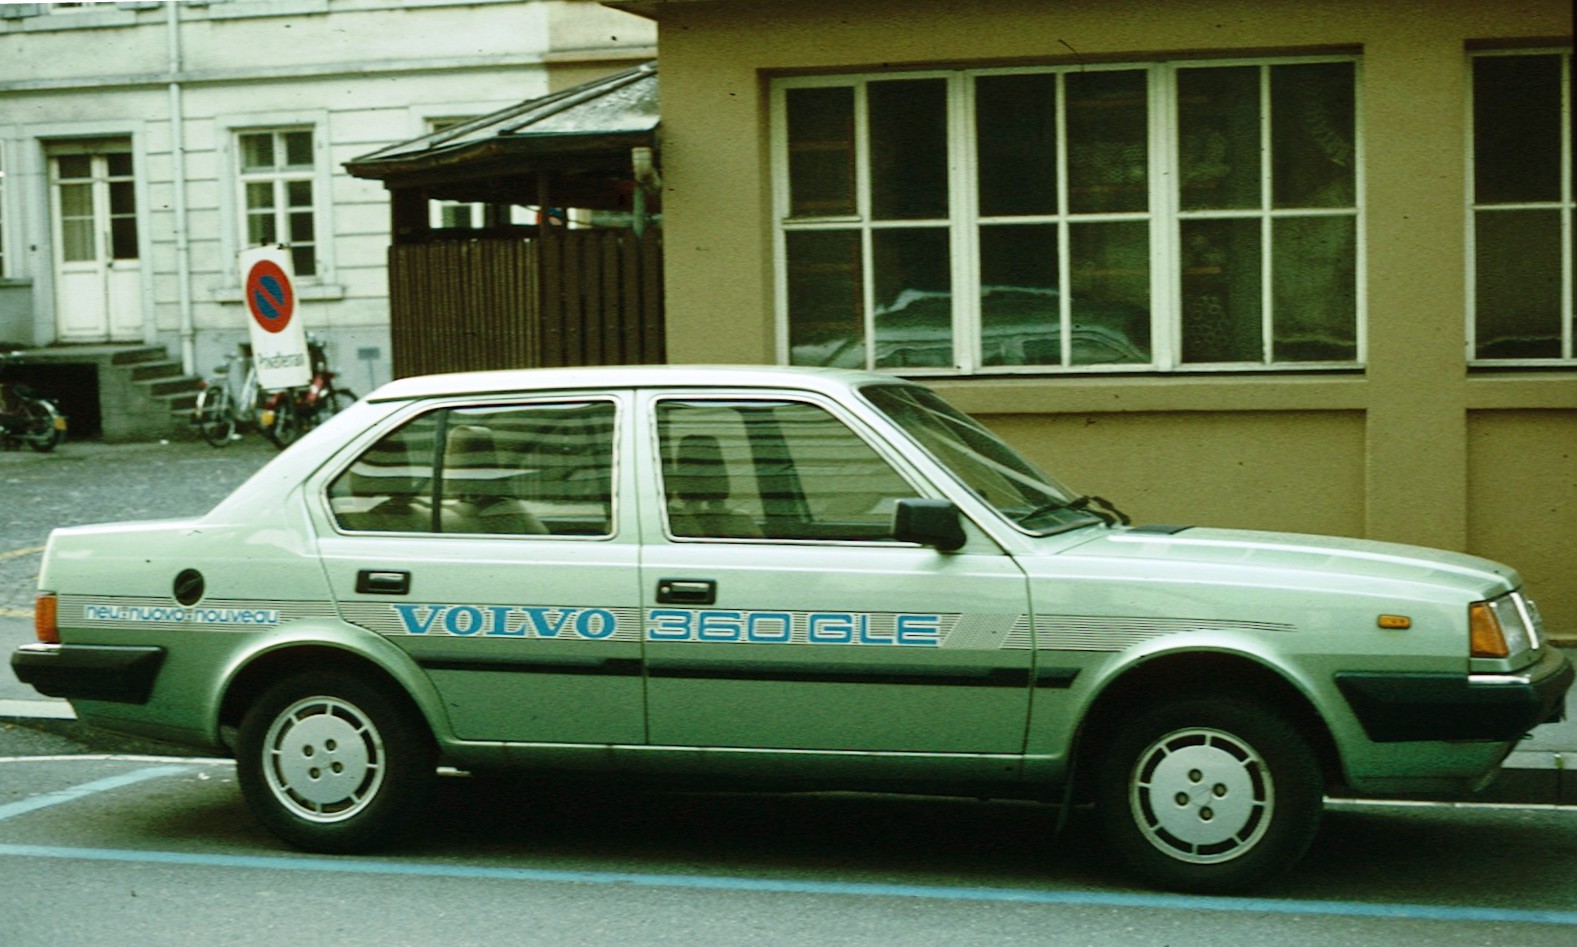 Volvo 360 GLE